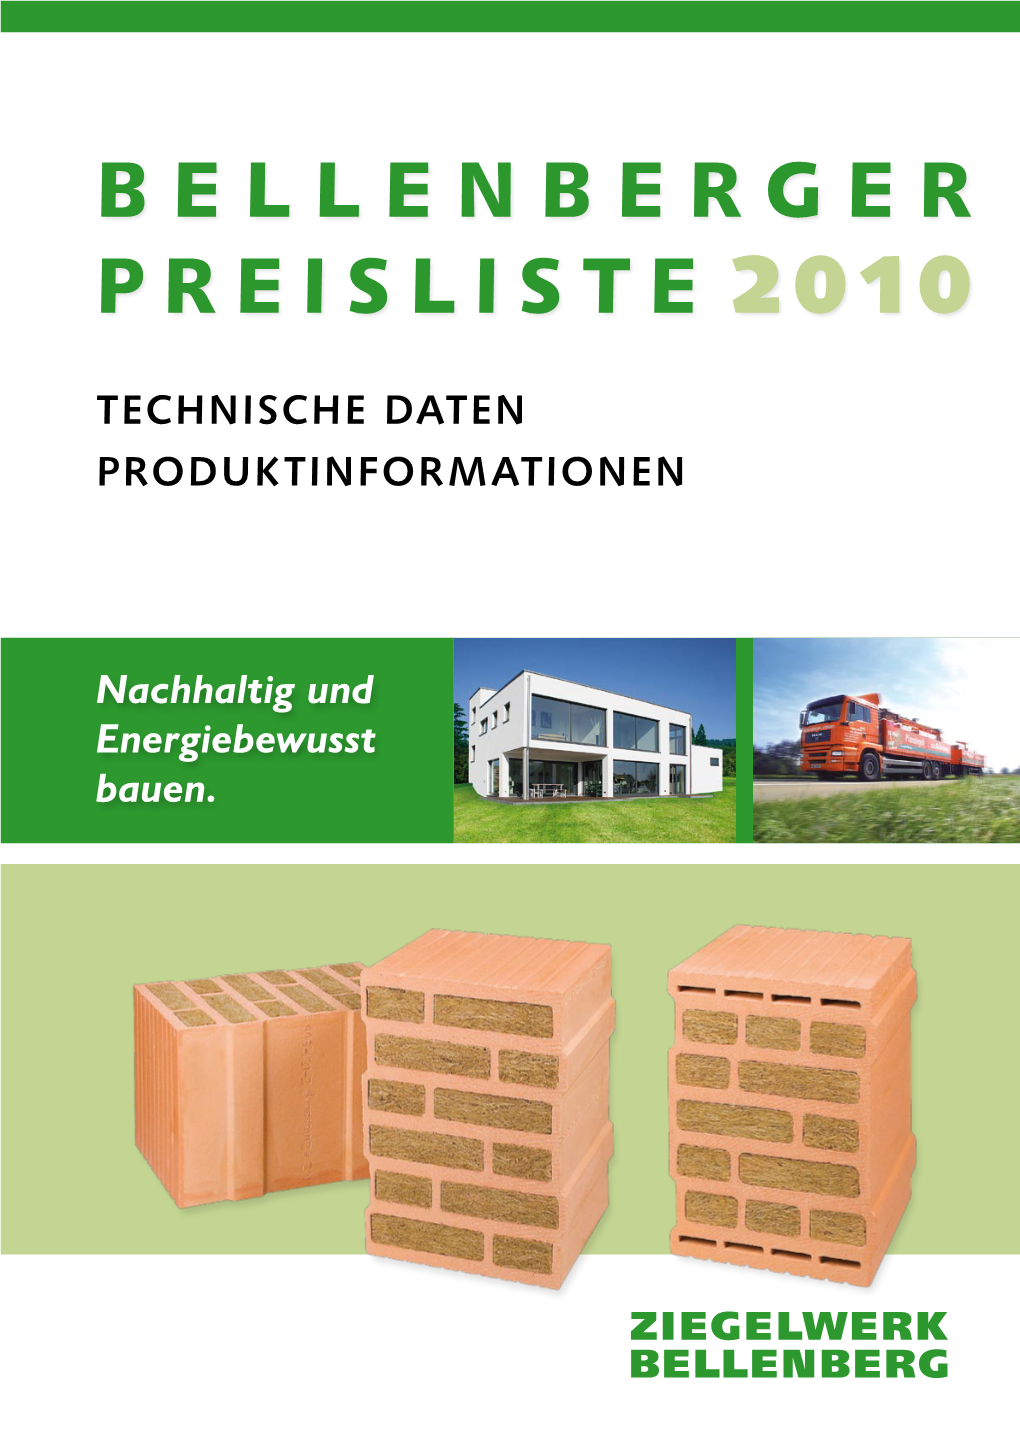 Bellenberger Preisliste 2009